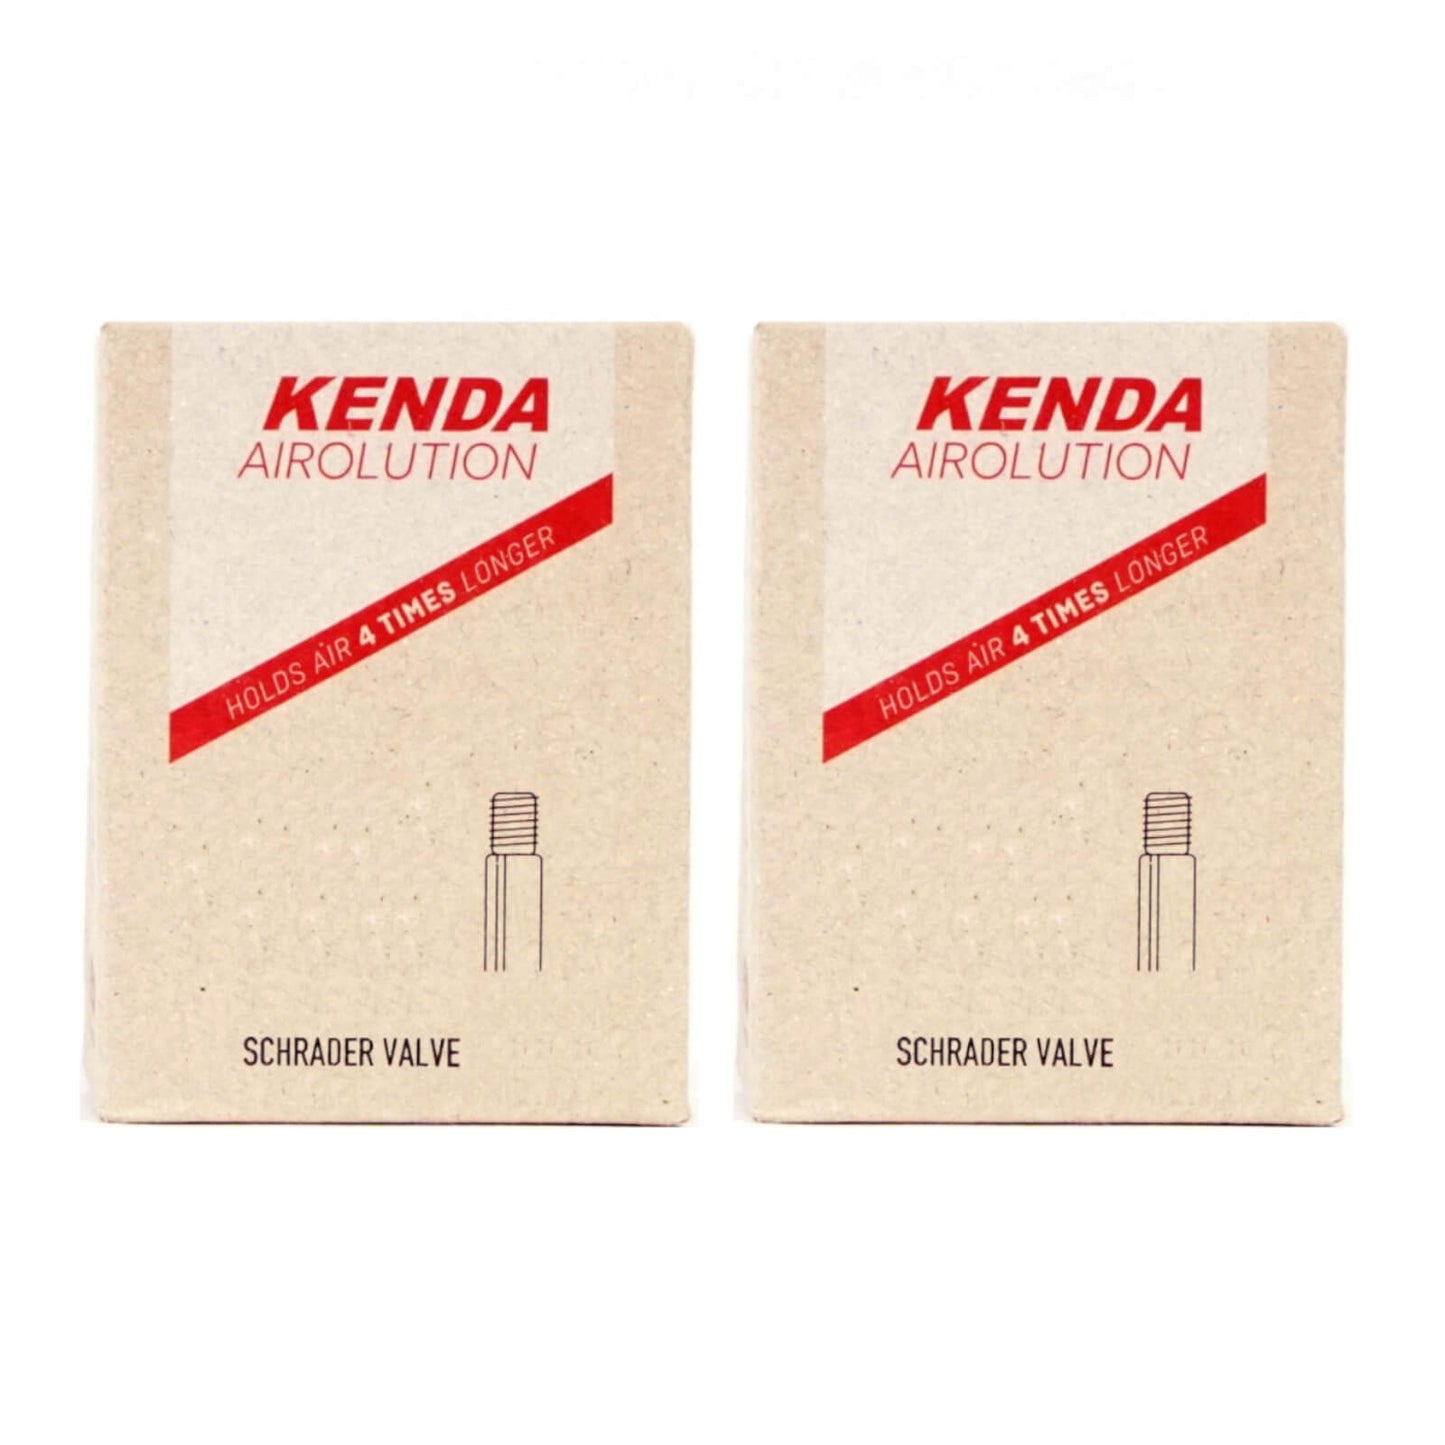 Kenda Airolution 700x30-43c 700c Schrader Valve Bike Inner Tube Pack of 2